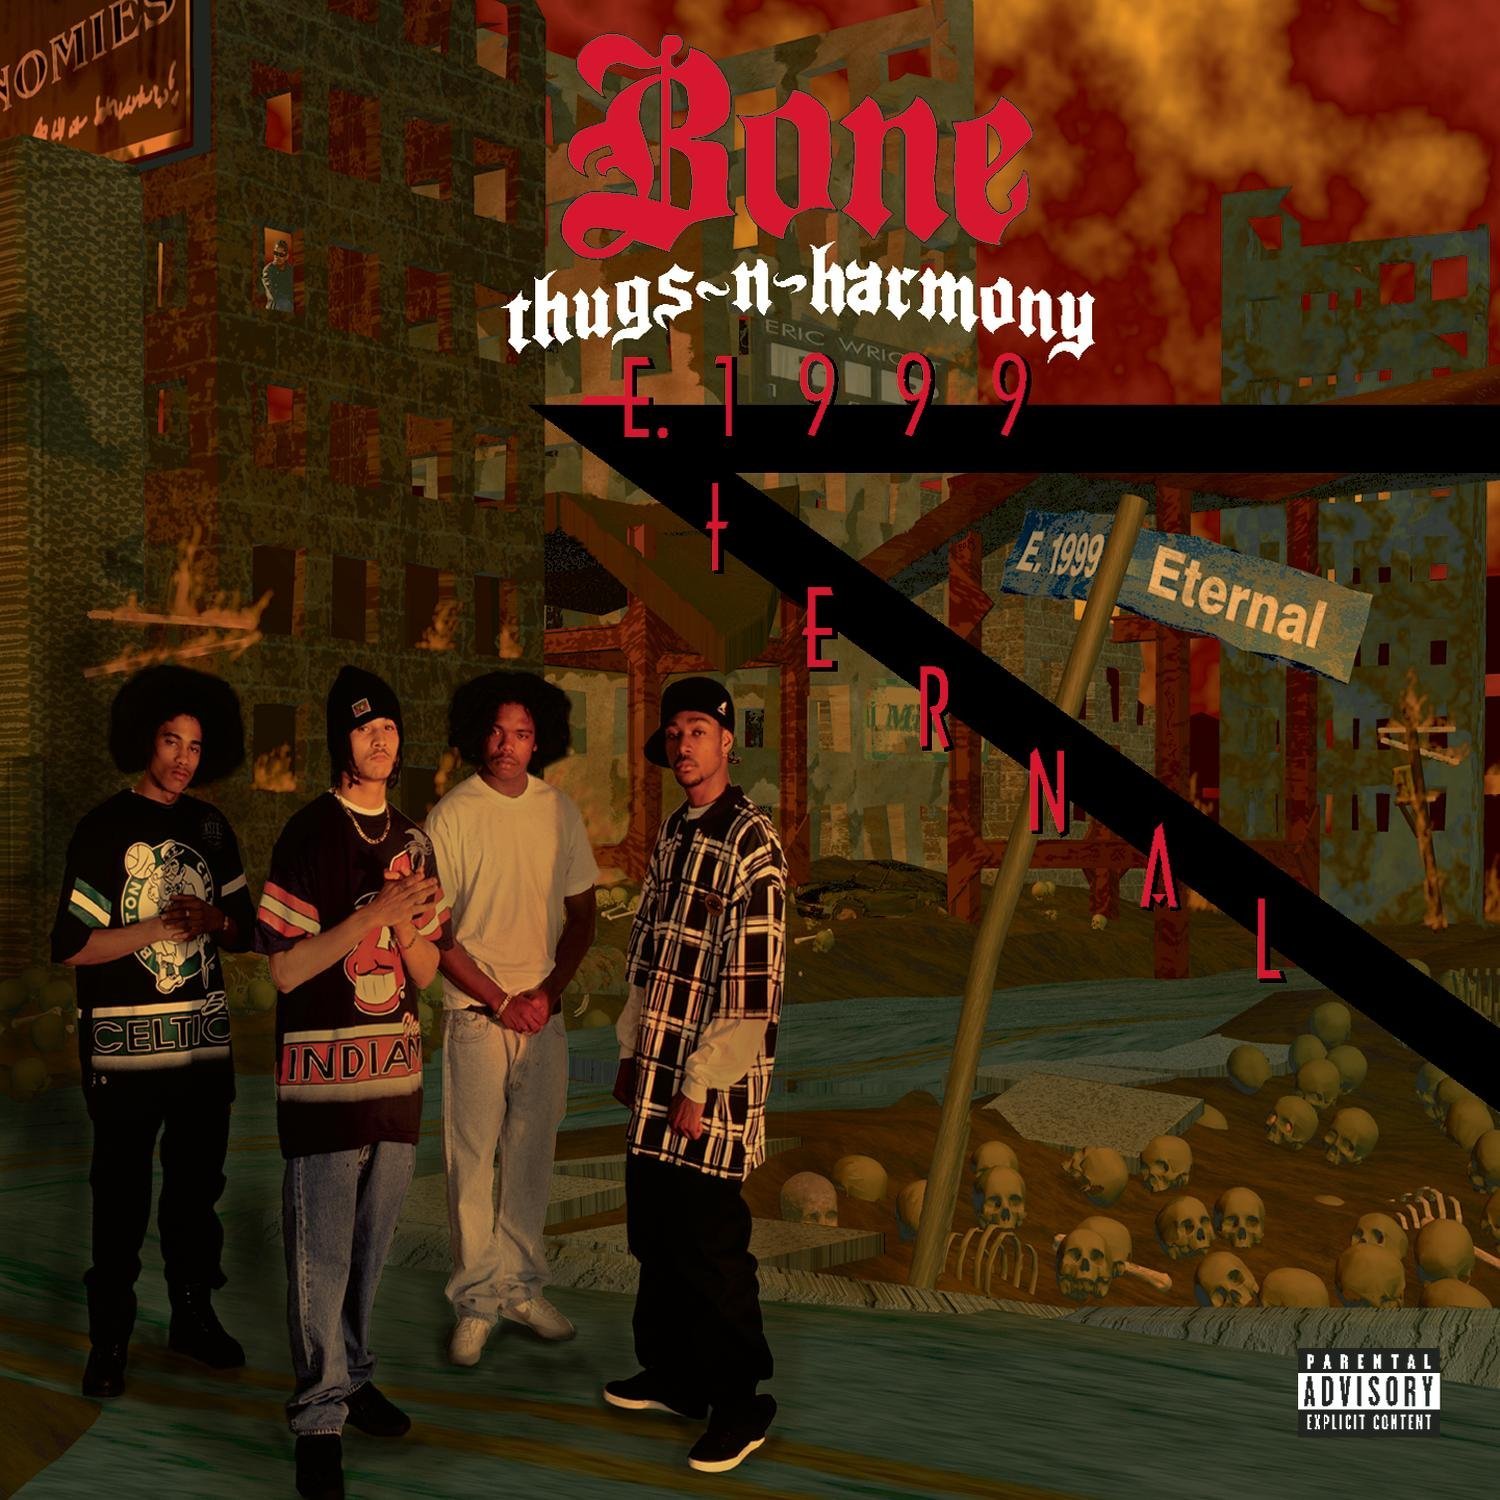 A SCENE IN RETROSPECT: Bone Thugs-N-Harmony – “E. 1999 Eternal”